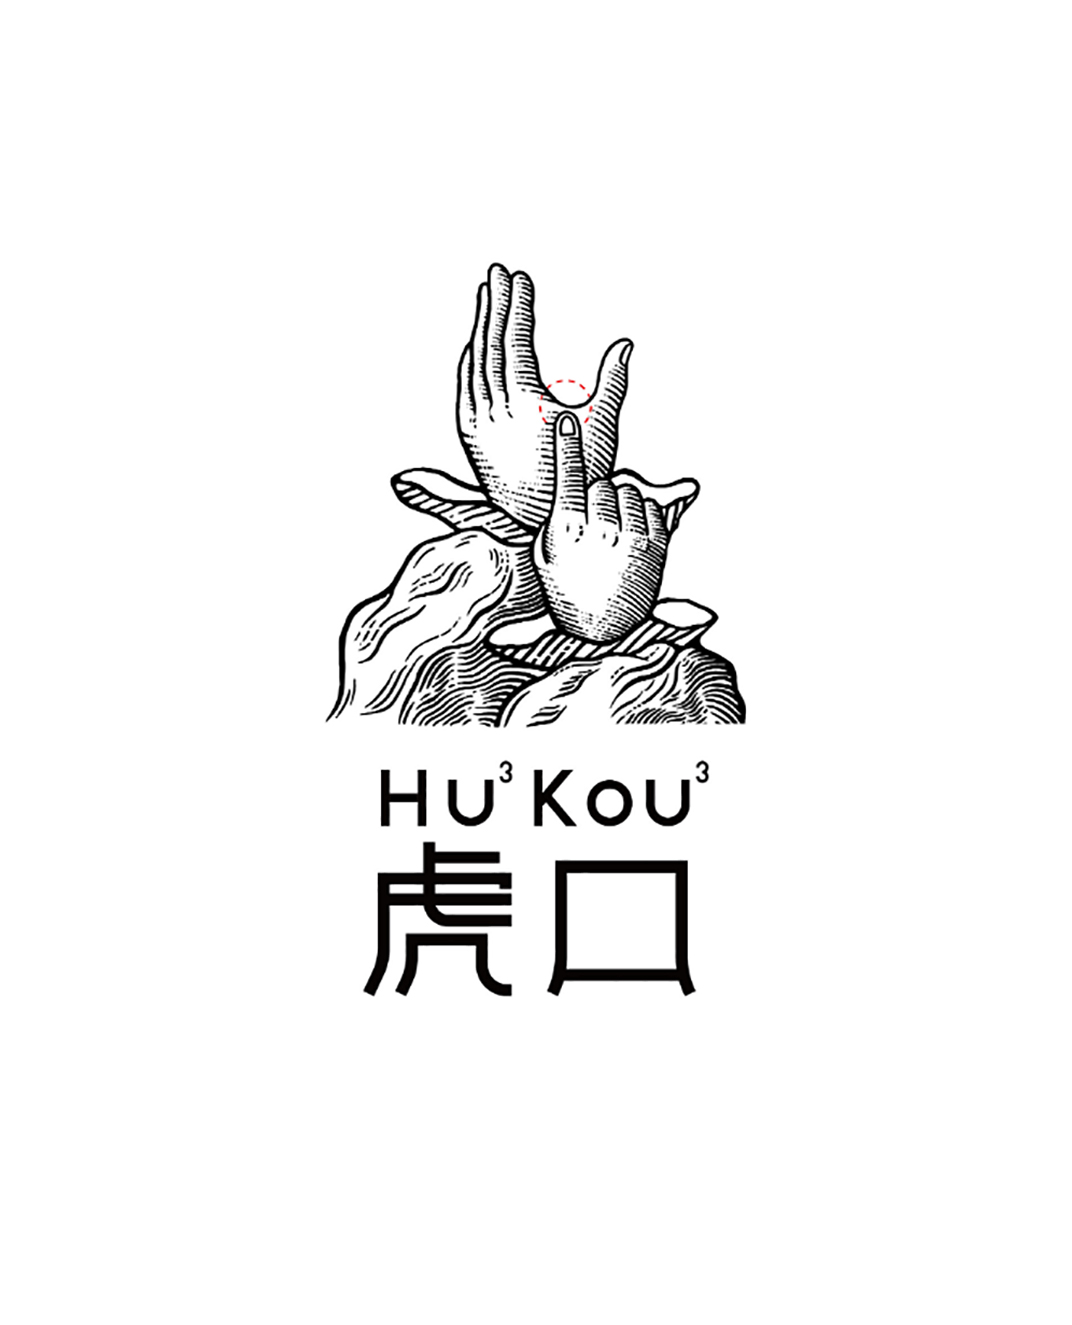 虎口Hu3Kou3 餐厅 成都 品牌推广 标志设计 餐厅 排版 字体设计 logo设计 vi设计 空间设计